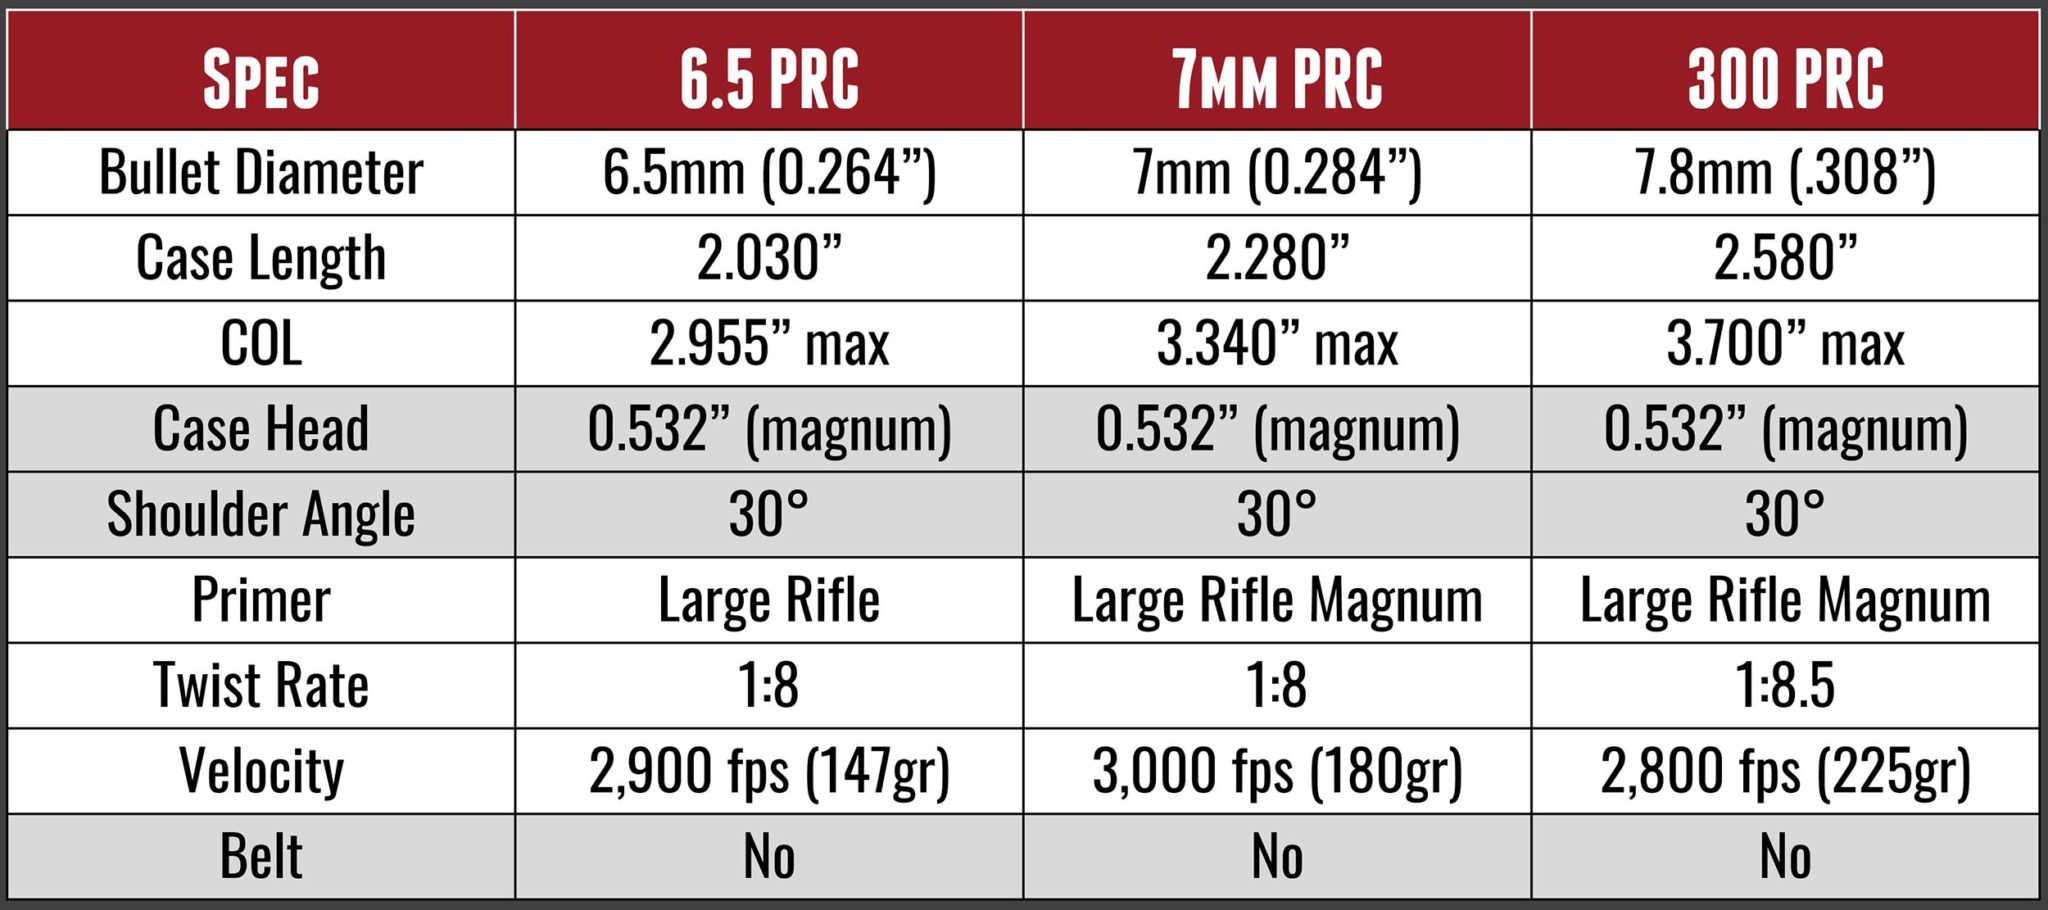 7mm PRC vs. 6.5 PRC vs. 300 PRC Ultimate Reloader